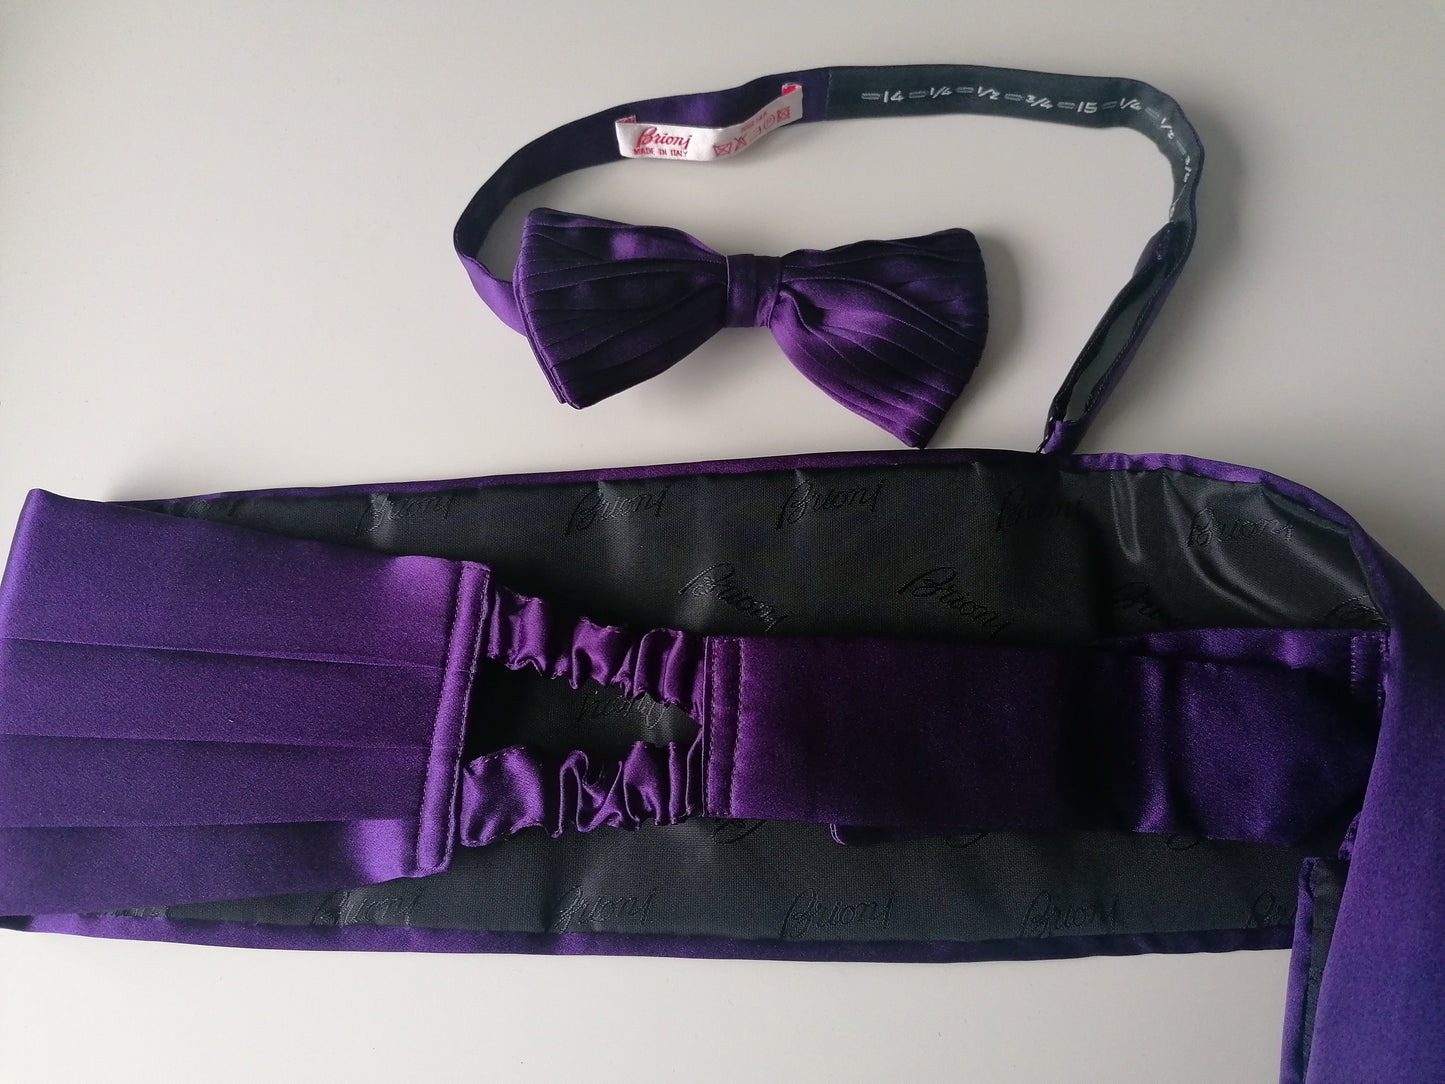 Ensemble Brioni Silk de Belly Band et Butterfly Tie / Cumber Band & Bowtie. Purple brillant. Taille m / l